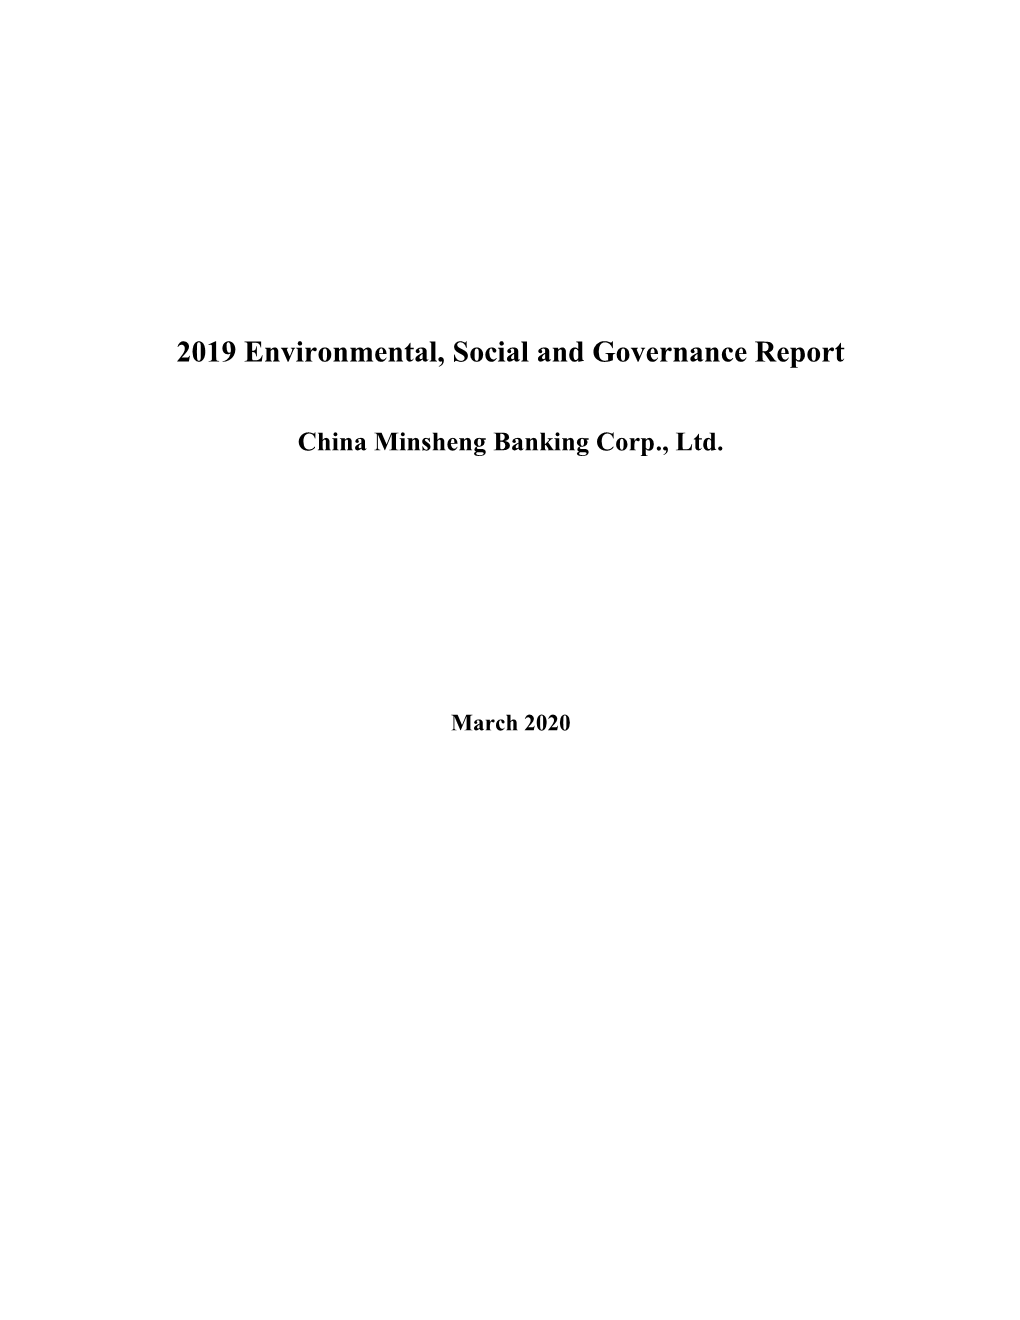 2019 Environmental, Social and Governance Report China Minsheng